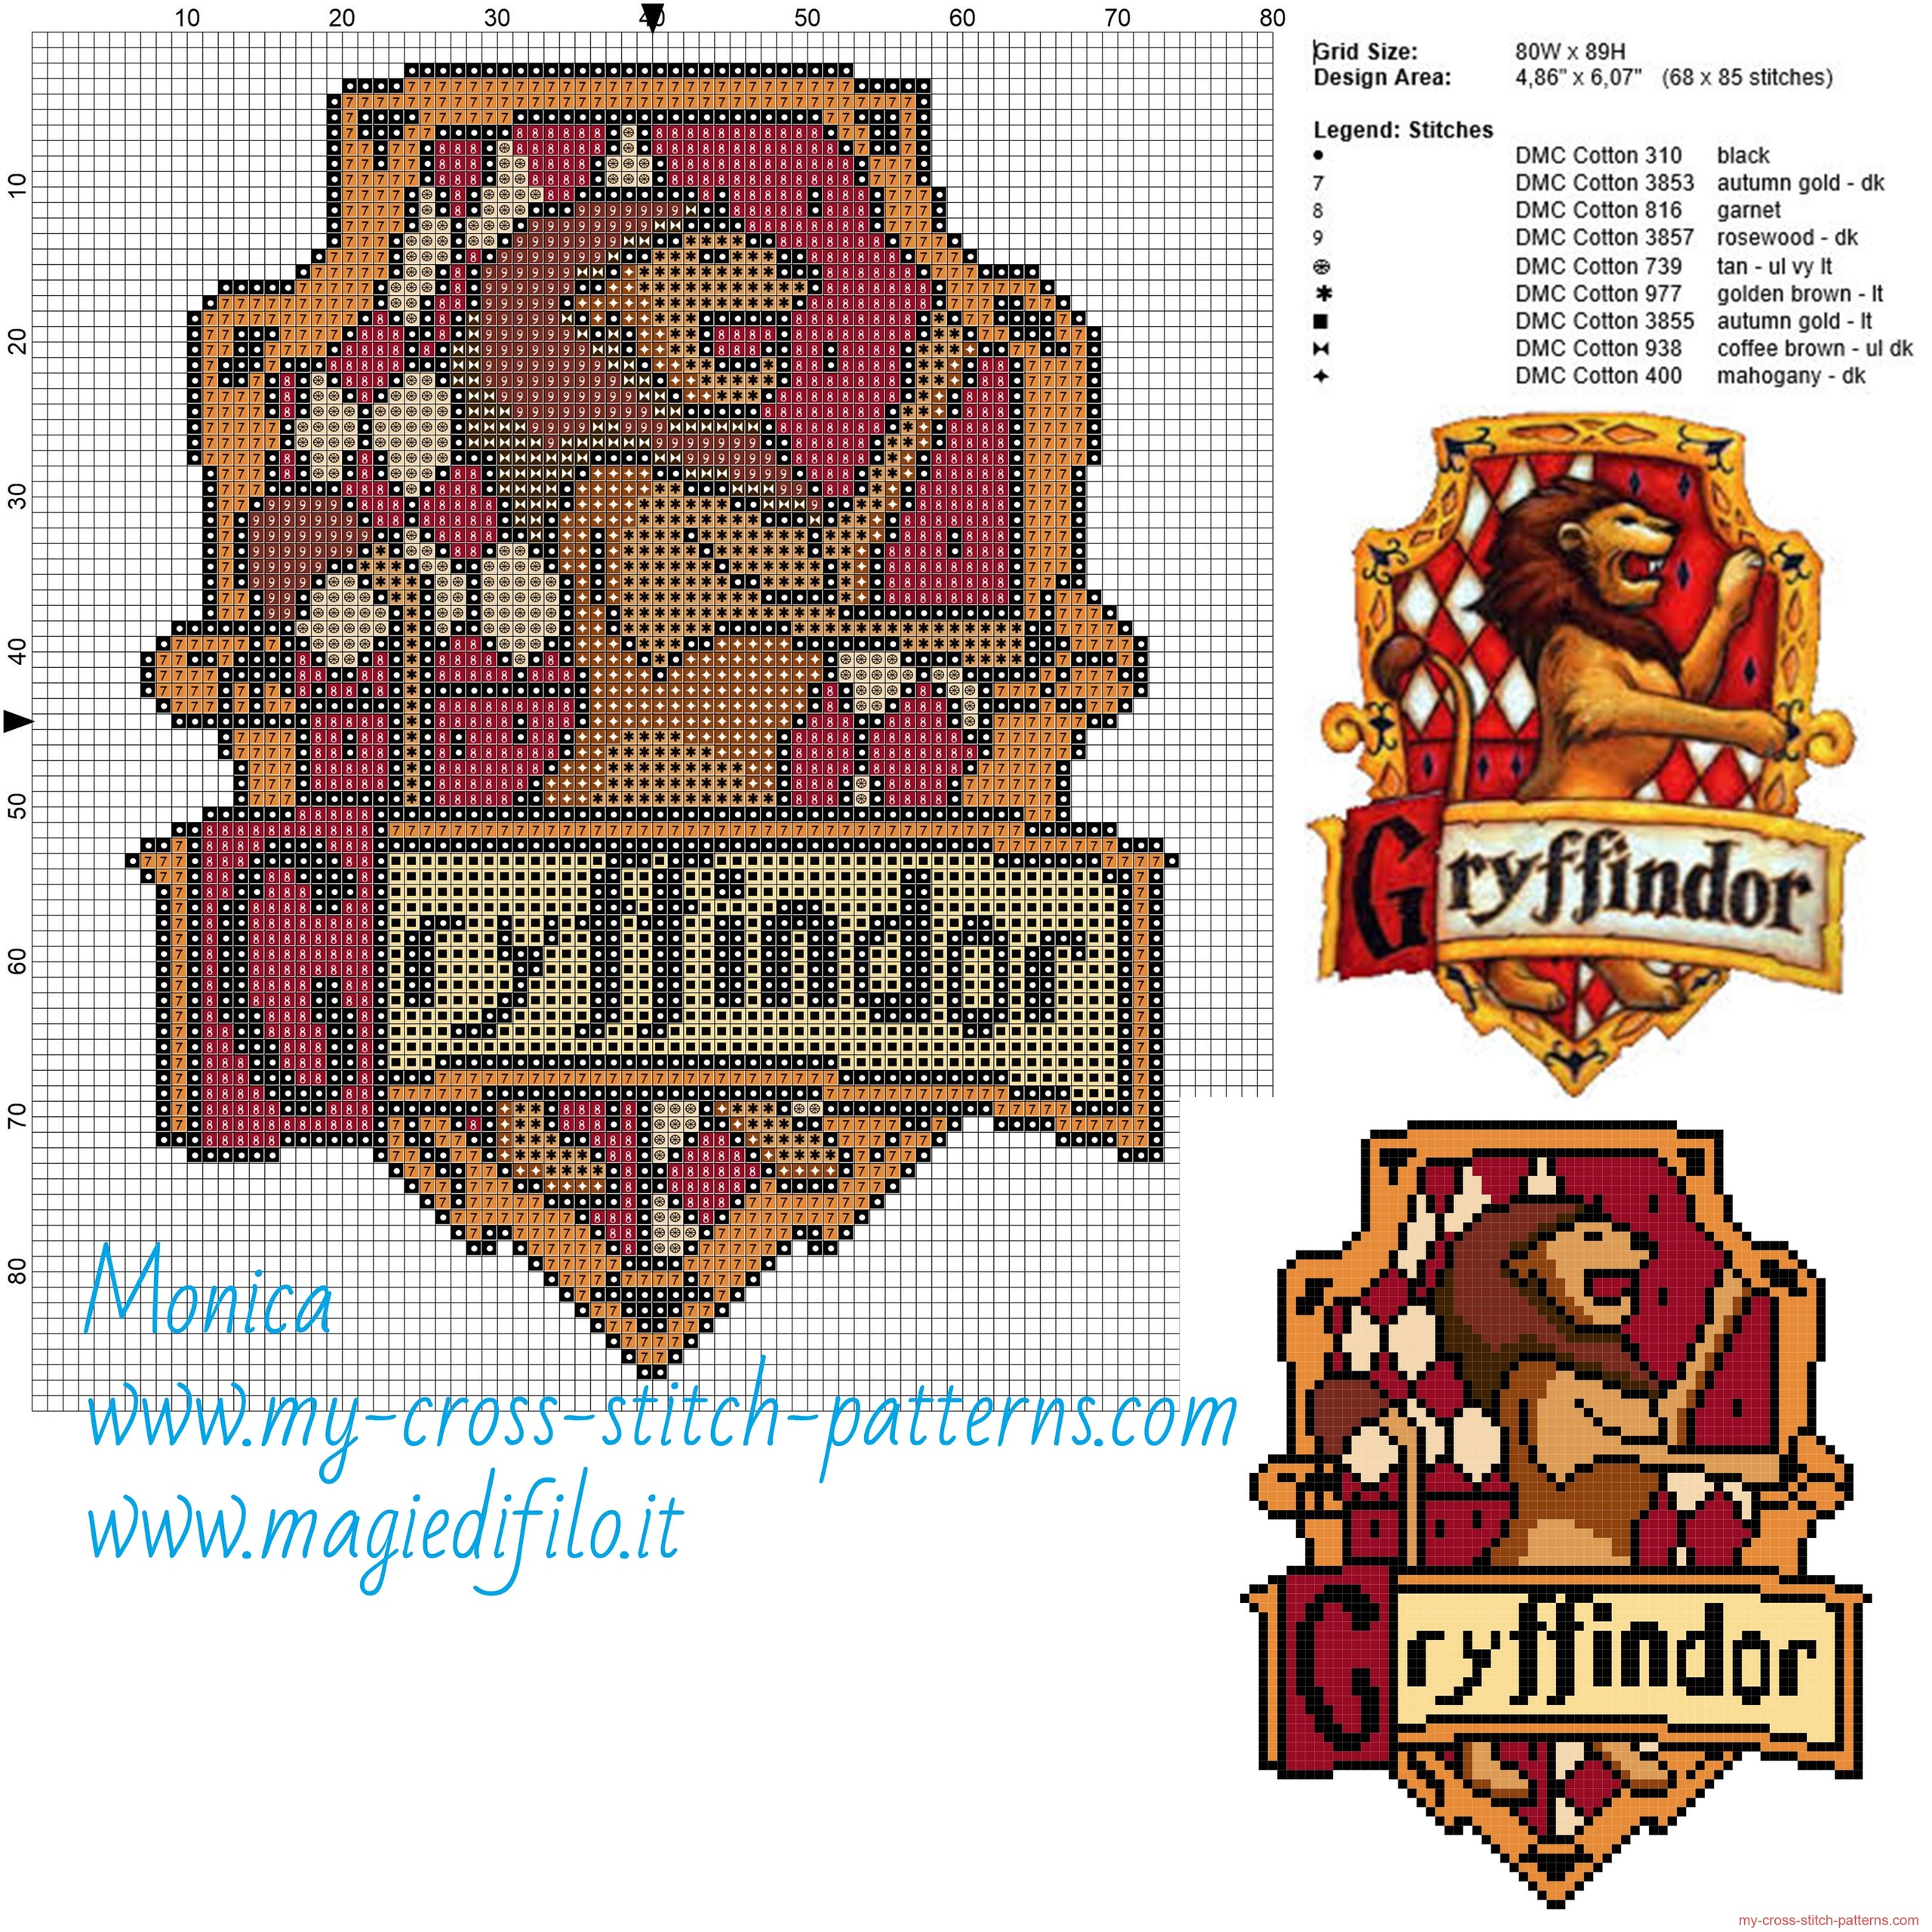 gryffindor_cross_stitch_pattern_